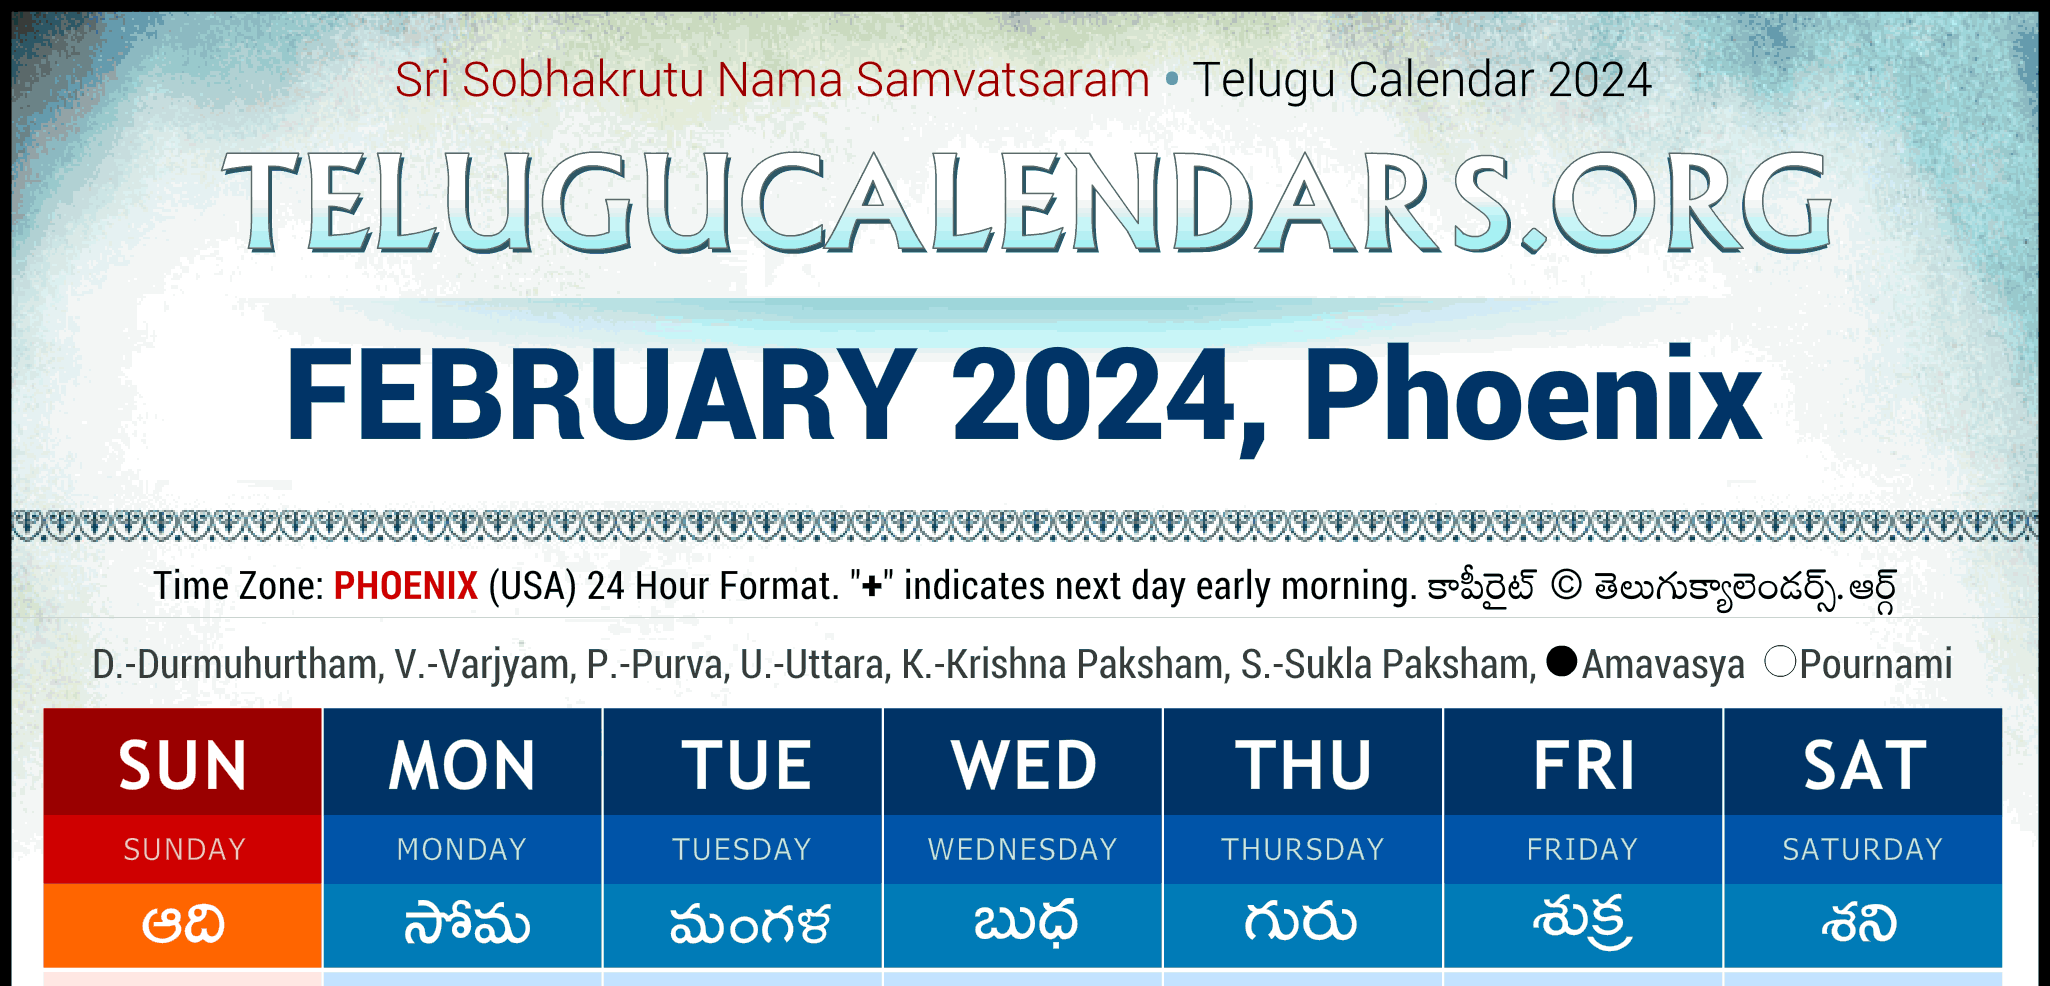 Telugu Calendar 2024 Phoenix